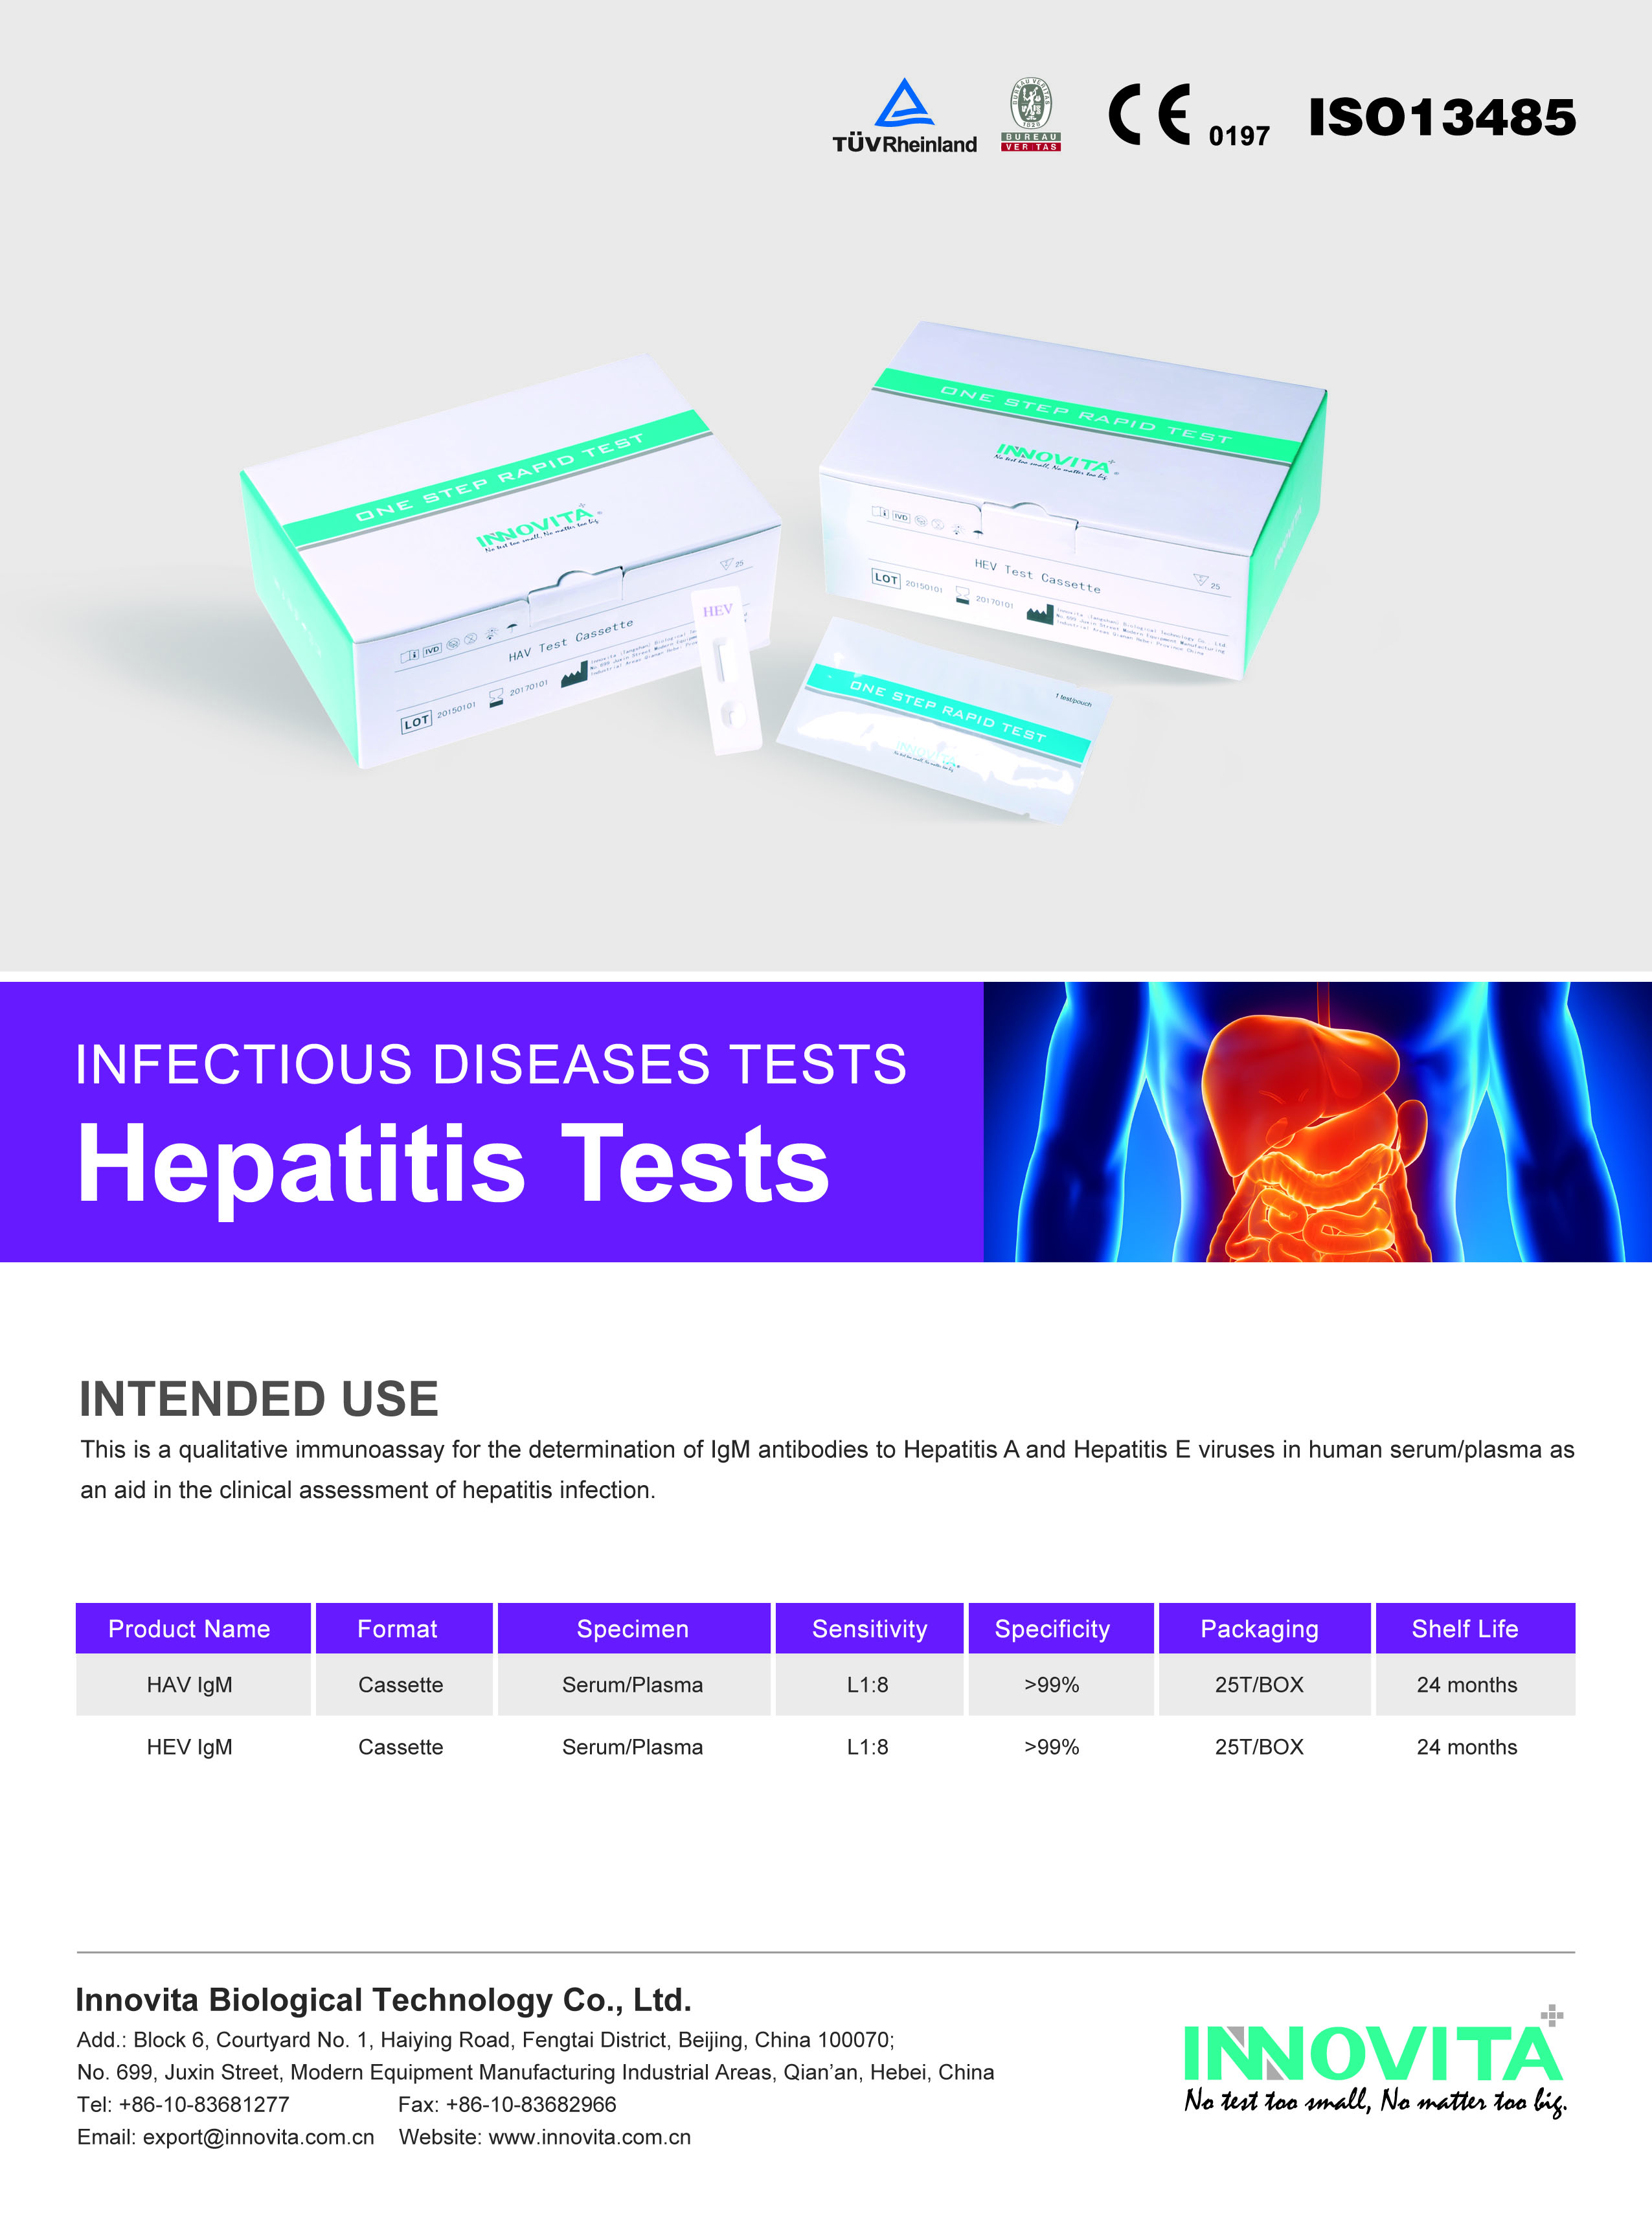 hepatitis test